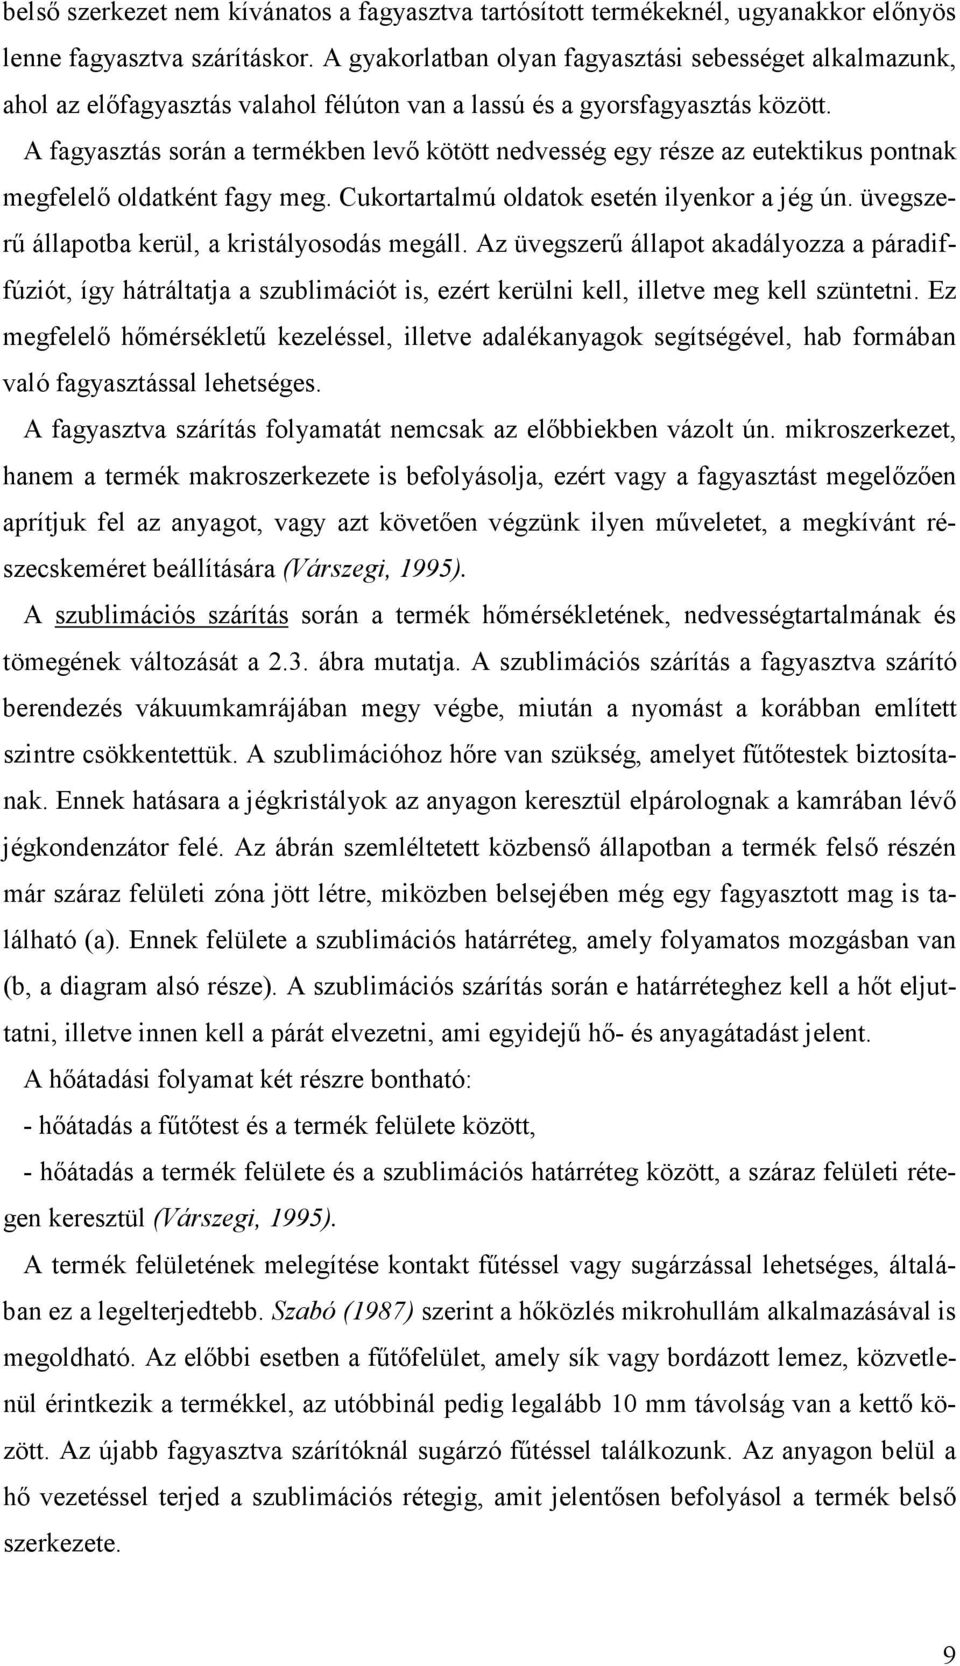 DOKTORI (Ph.D.) ÉRTEKEZÉS - PDF Ingyenes letöltés